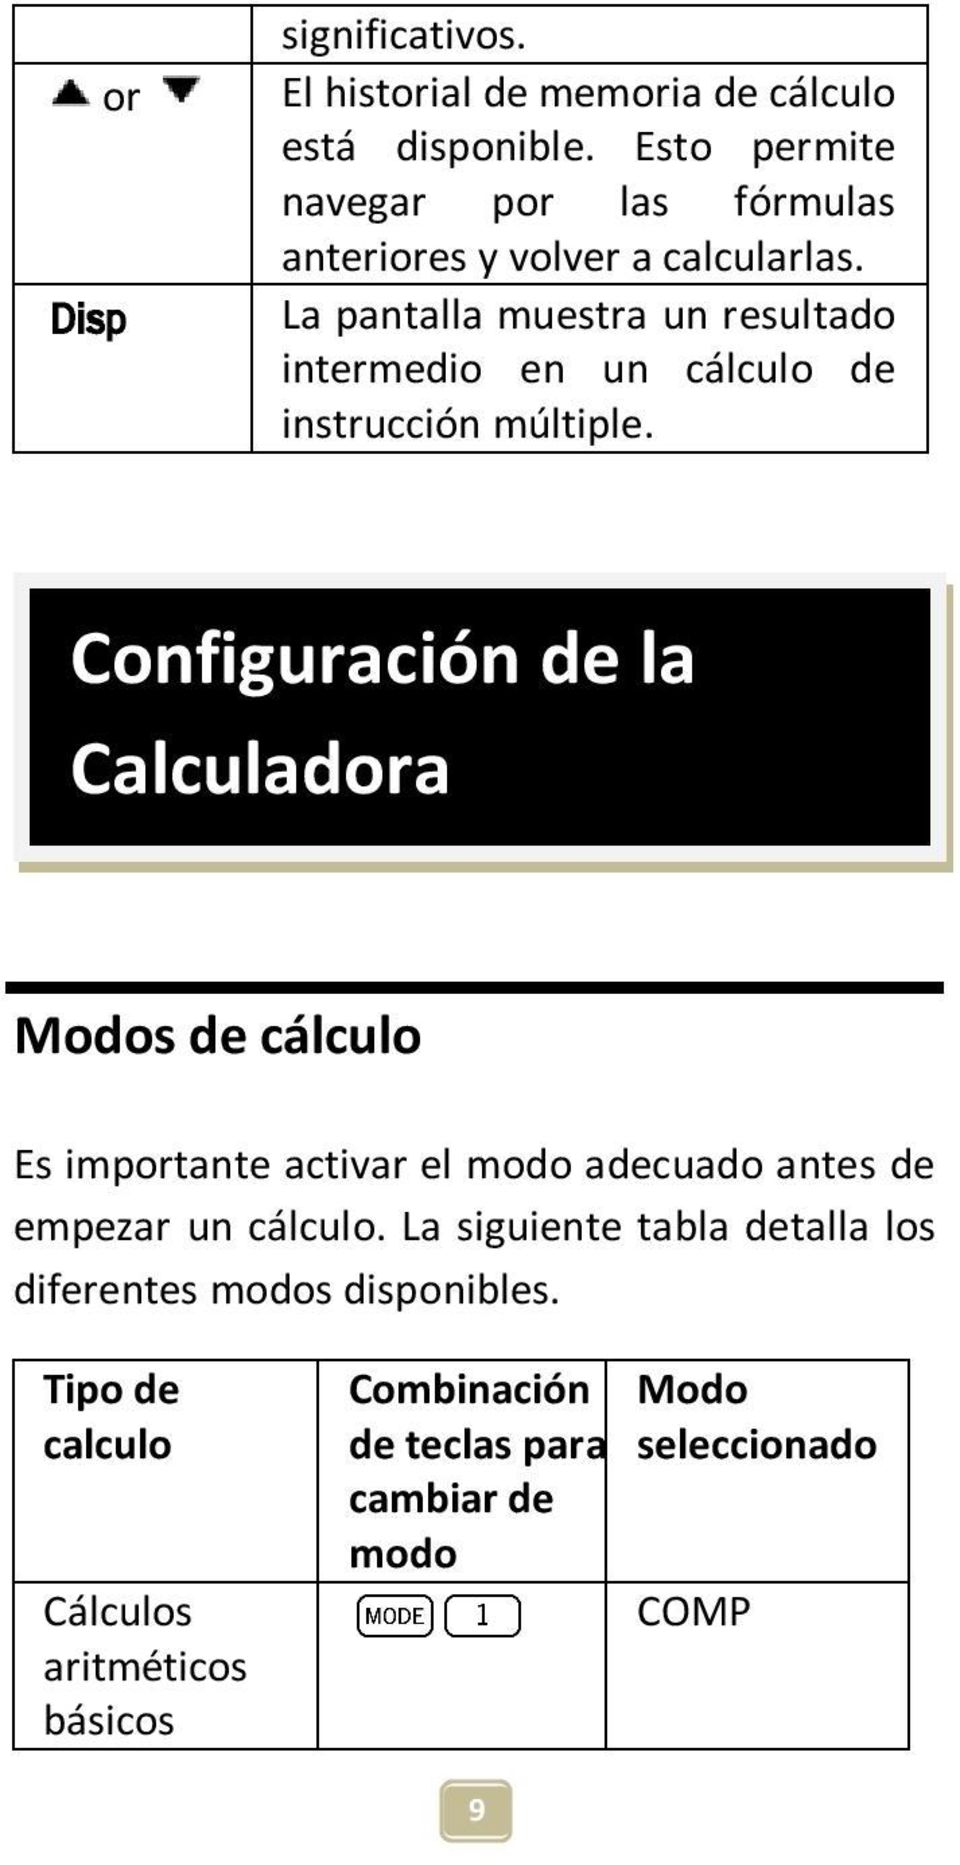 La pantalla muestra un resultado intermedio en un cálculo de instrucción múltiple.